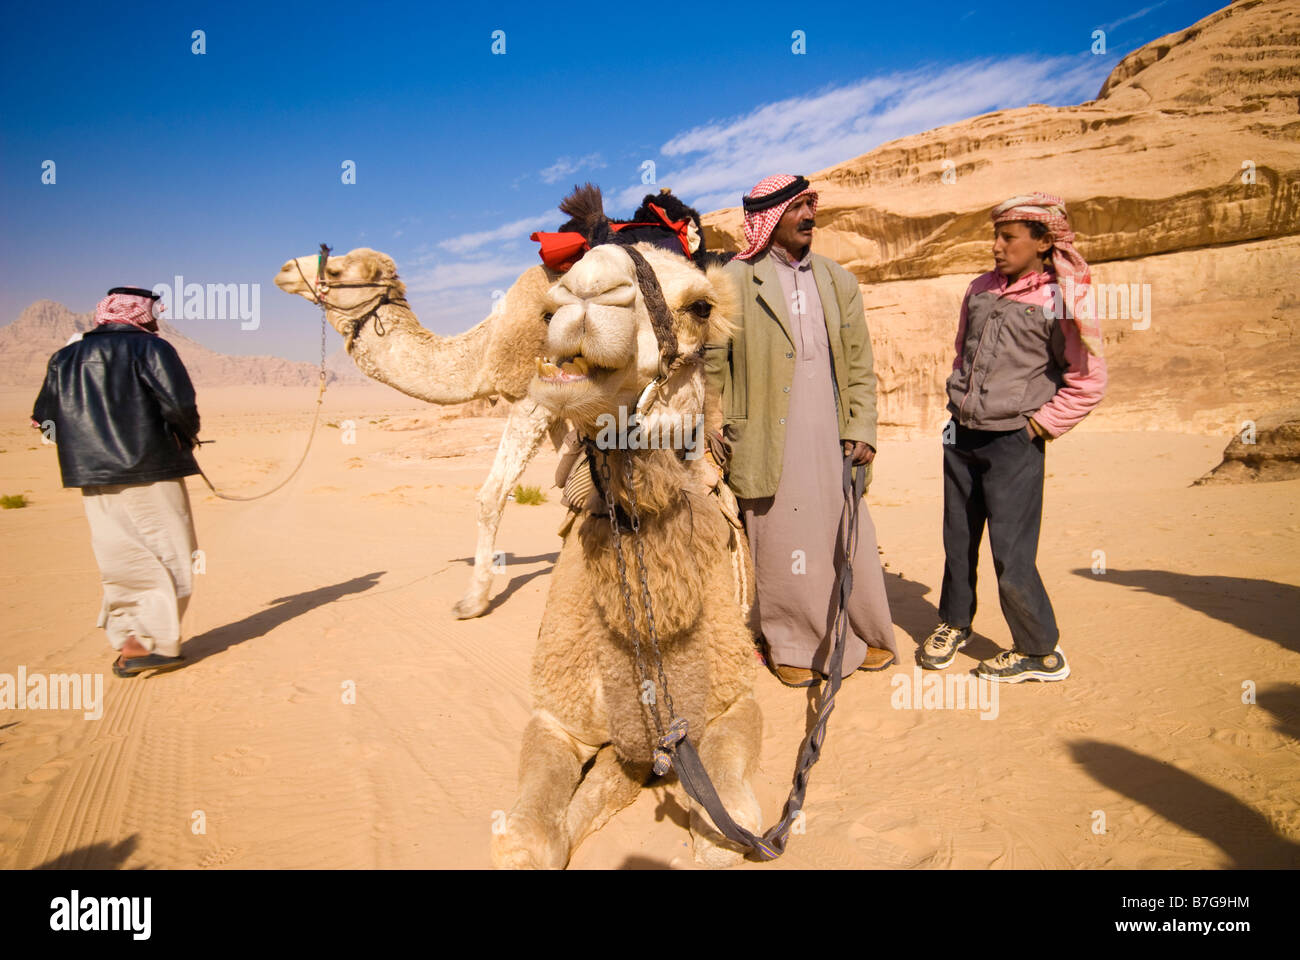 Les bédouins et les chameaux dans le désert de Wadi Rum Jordanie Banque D'Images